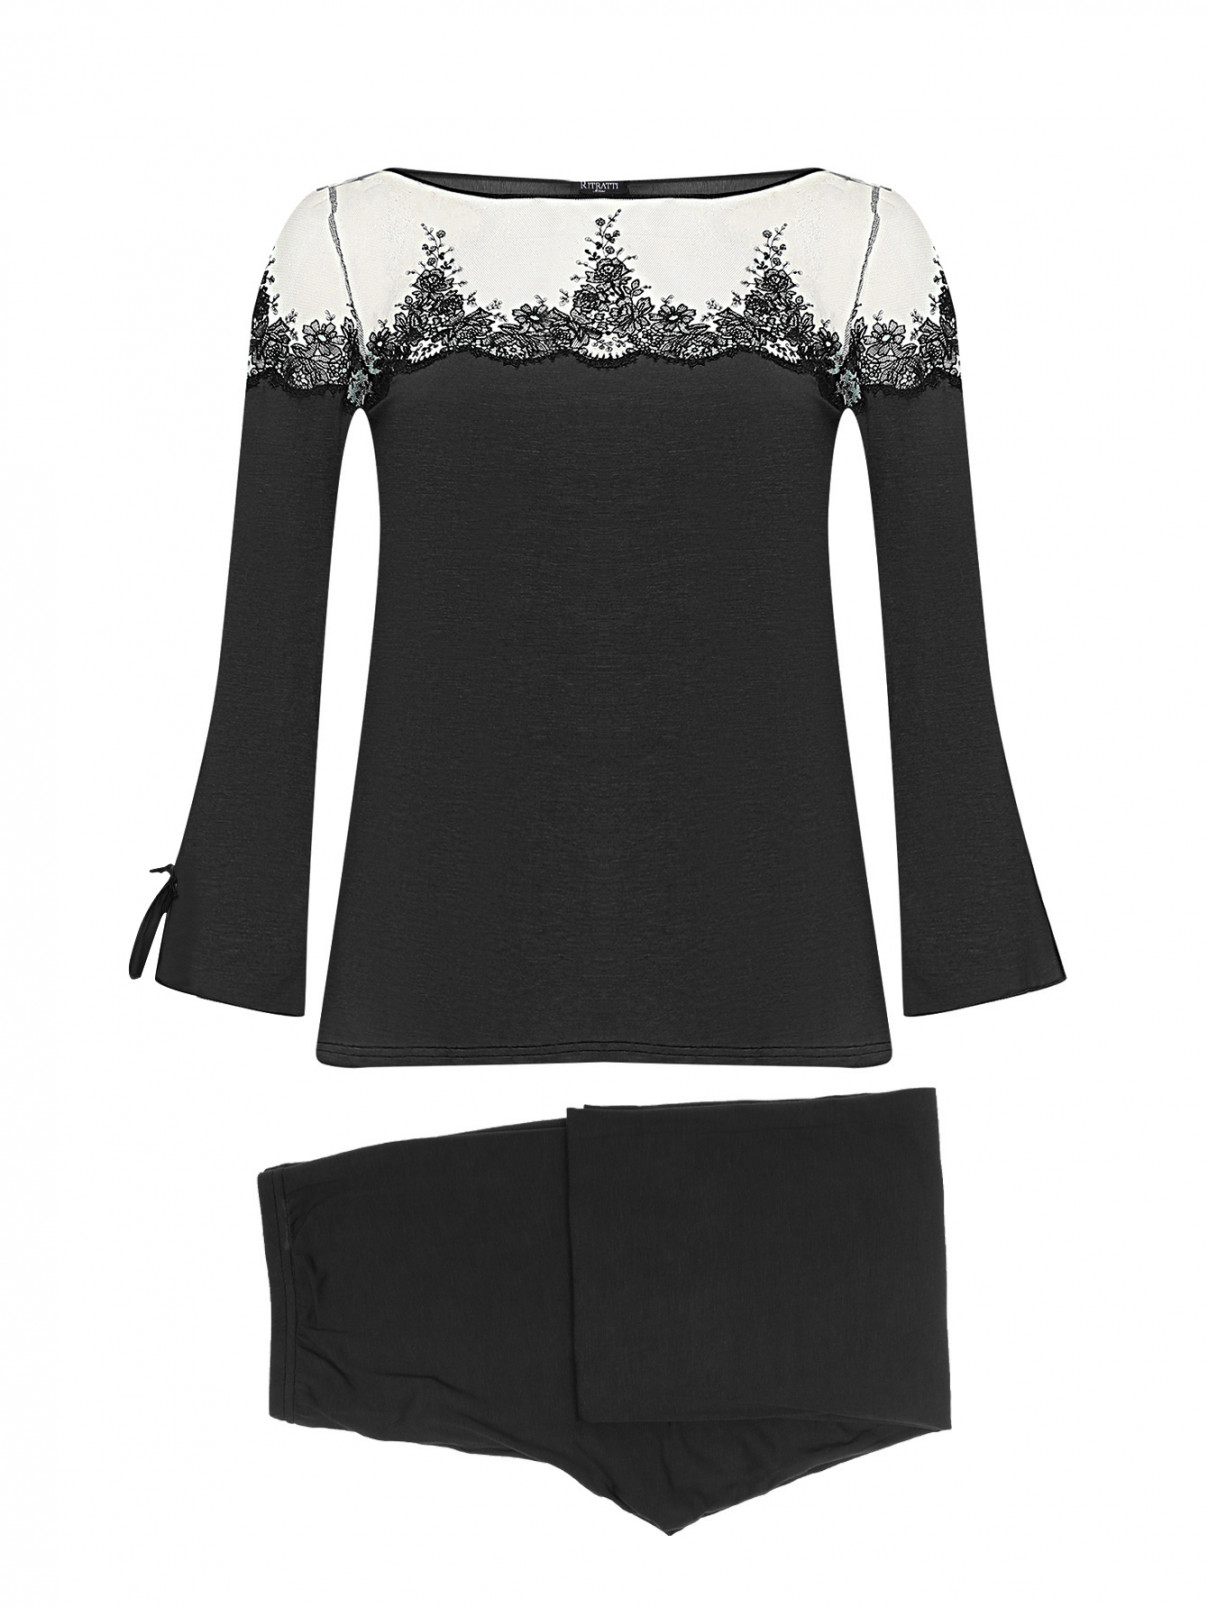 Пижама с кружевной вышивкой Ritratti  –  Общий вид  – Цвет:  Черный